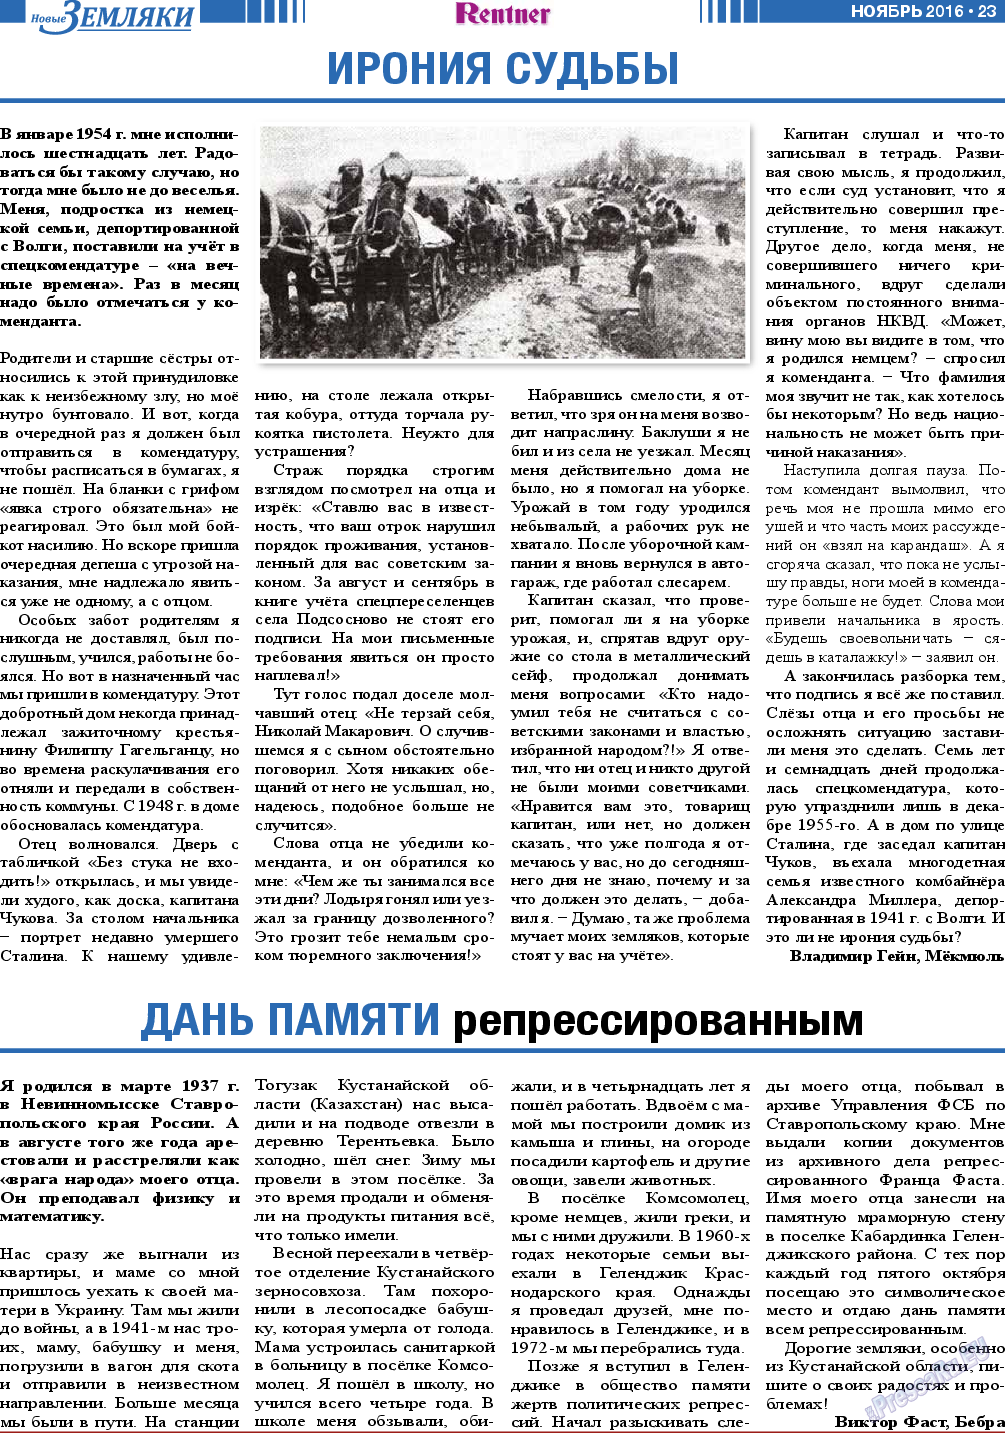 Новые Земляки, газета. 2016 №11 стр.23